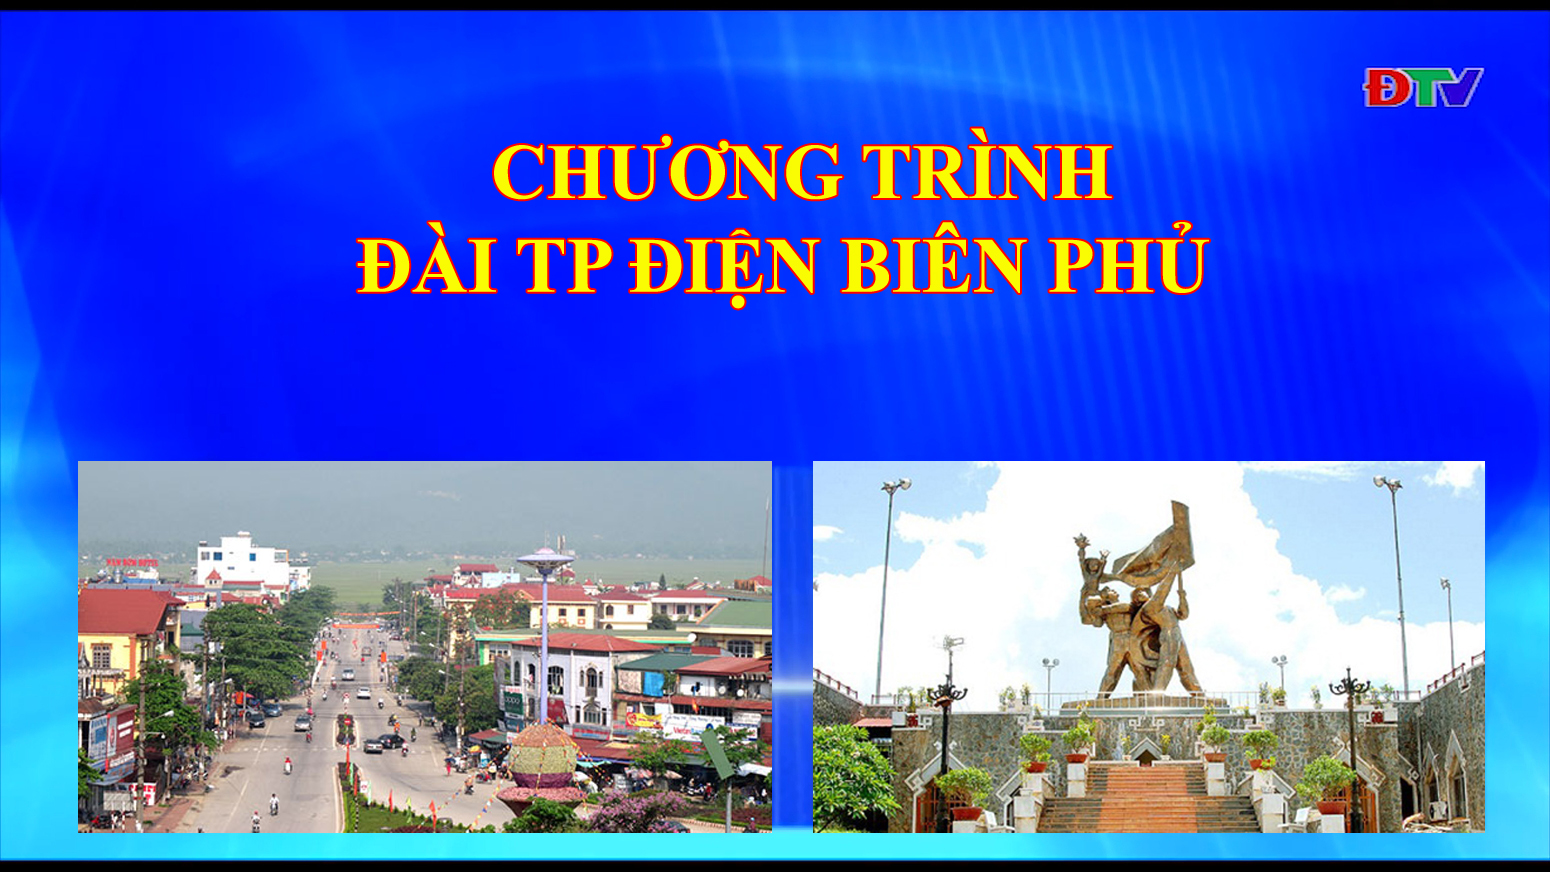 Đài thành phố Điện Biên Phủ (ngày 12-11-2019)